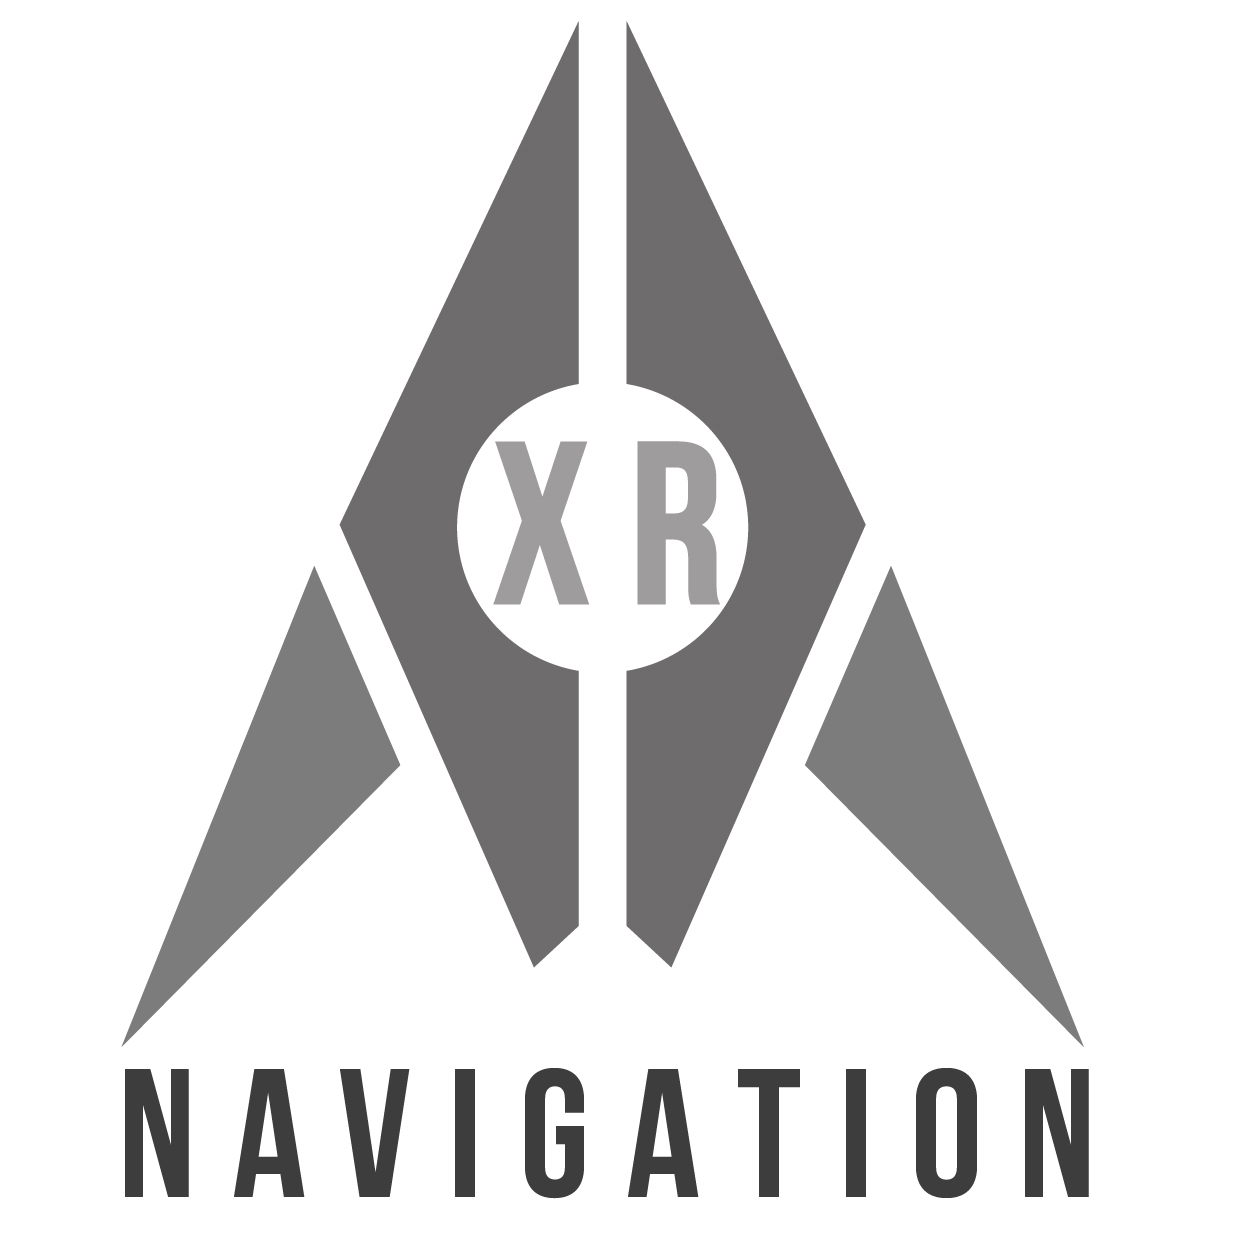 XR Navigation